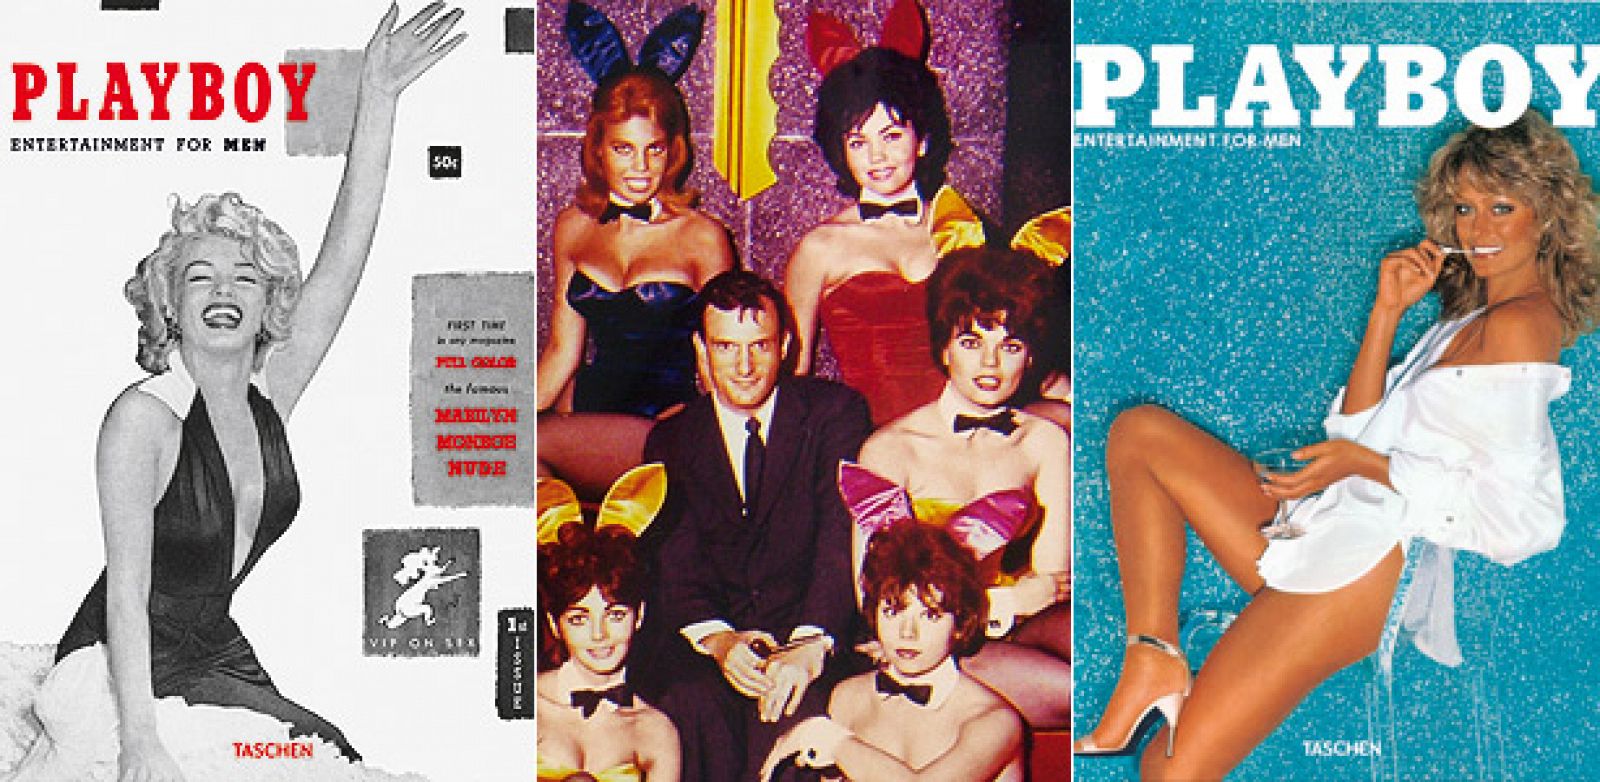 Hugh Hefner rodeado de sus "Conejitas" y flanqueado por dos de las portadas más famosas de 'Playboy', la del primer número, con Marilyn Monroe, y la del ejemplar protagonizado por Farrah Fawcett